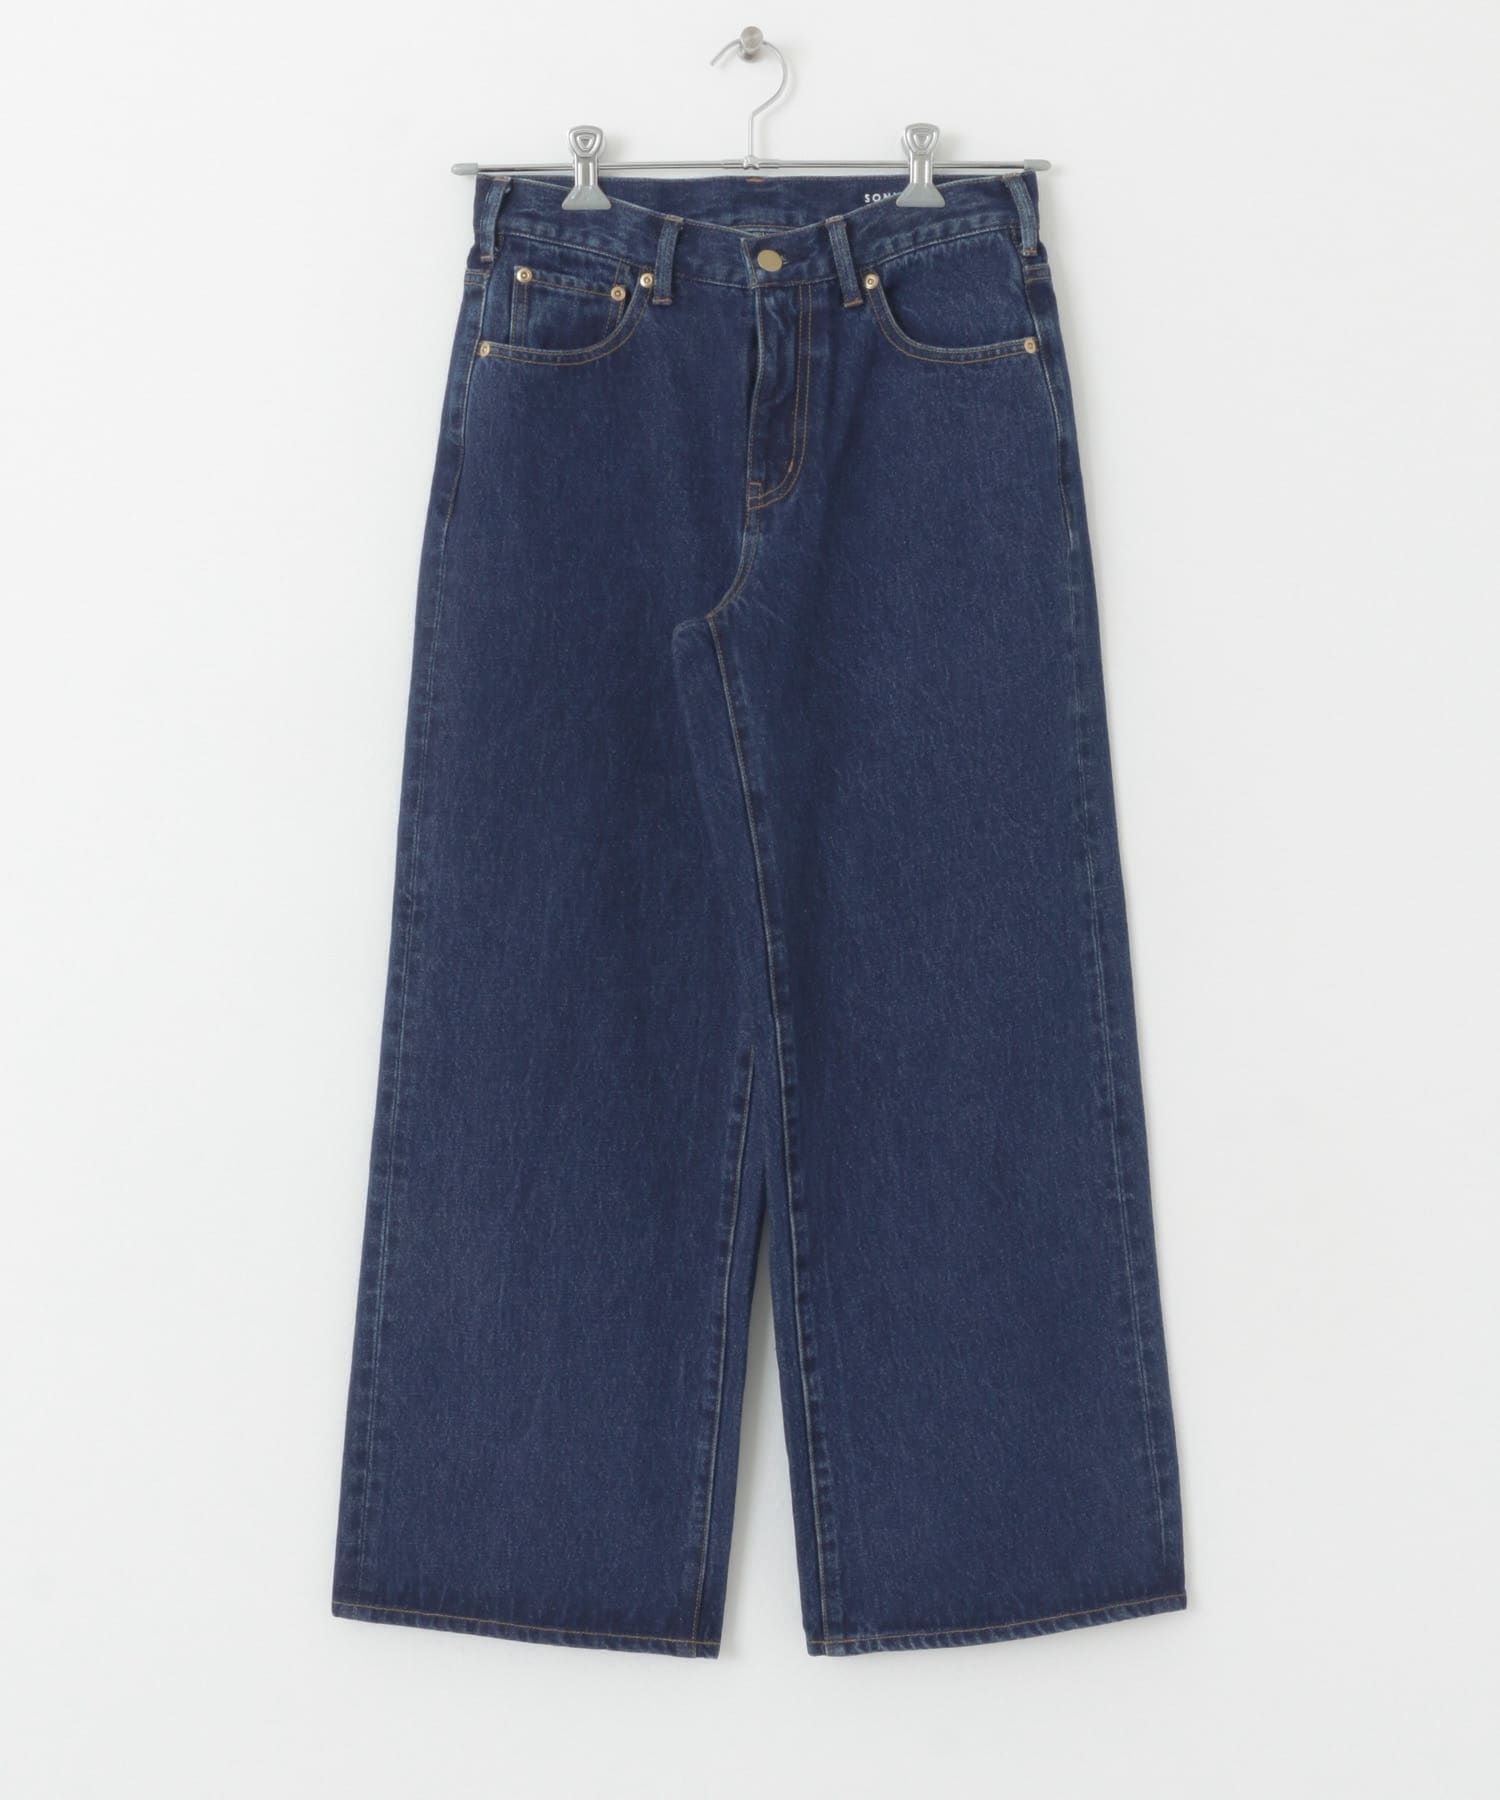 低腰直筒牛仔褲(靛青色-34-INDIGO BLUE)